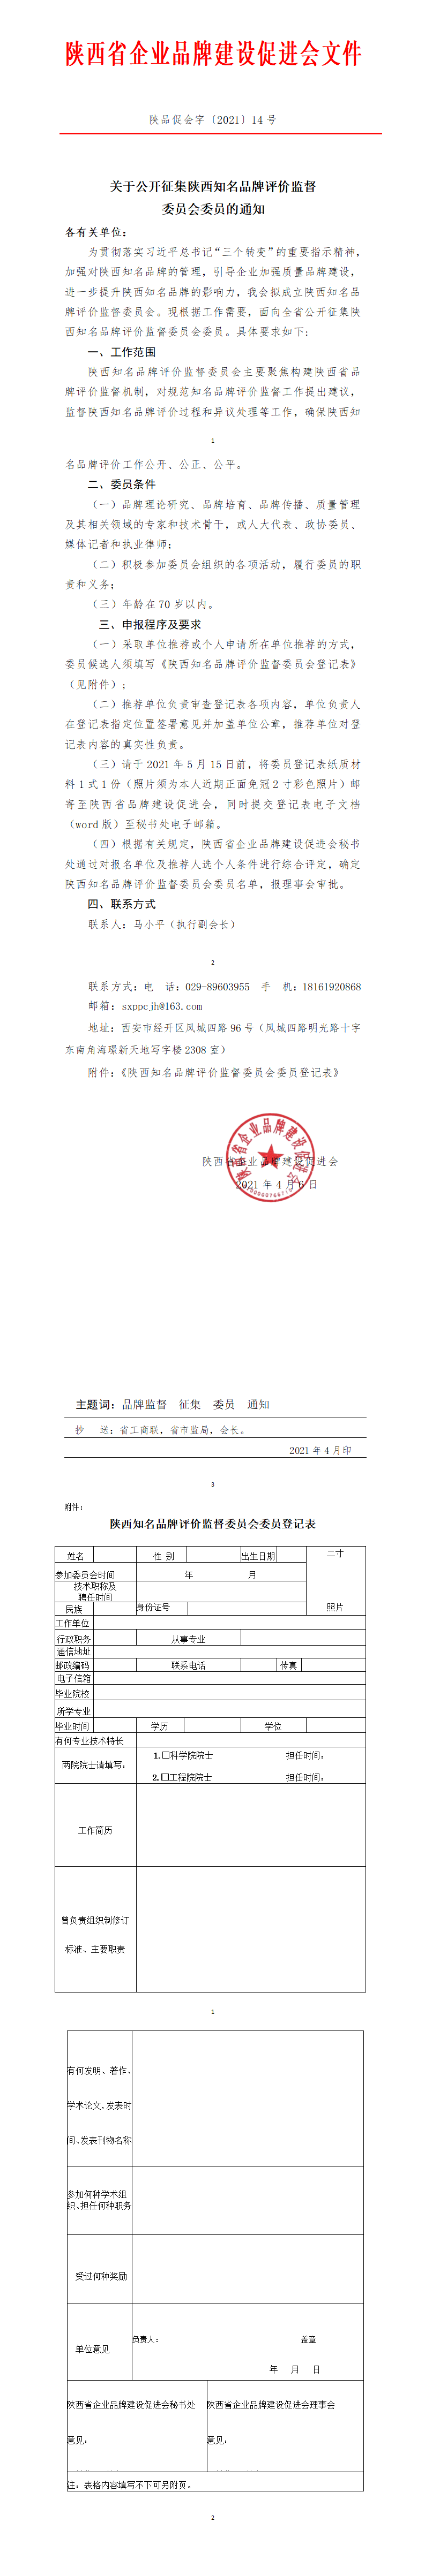 陕西省企业品牌建设促进会文件关于公开征集陕西知名品牌评价监督 委员会委员的通知(图1)